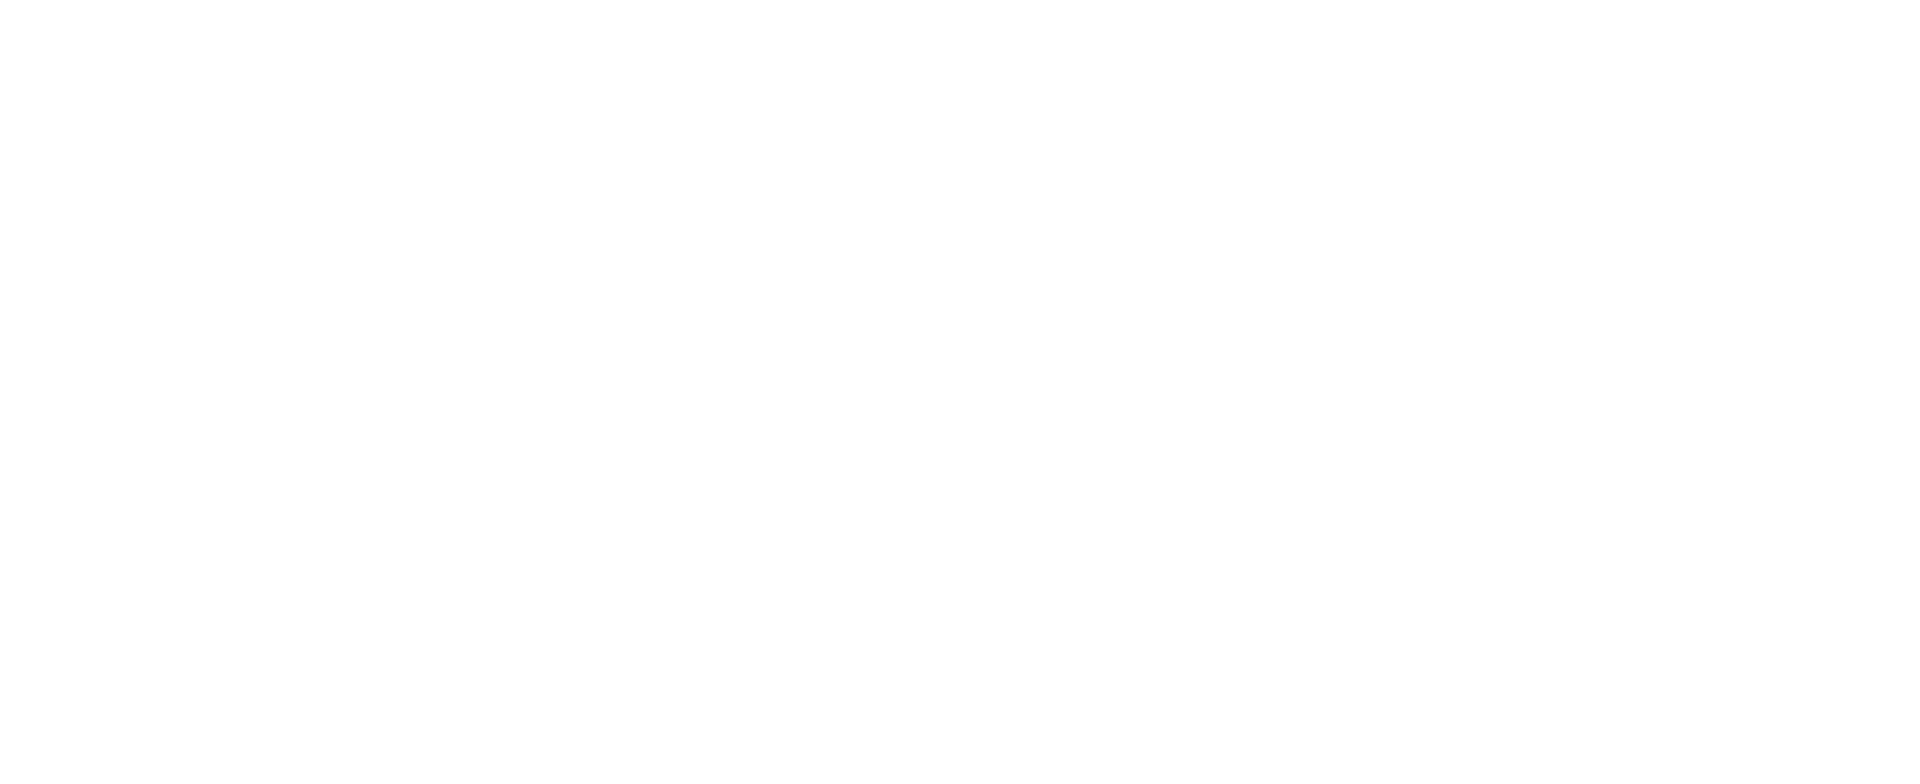 power-house-hannover-overlay